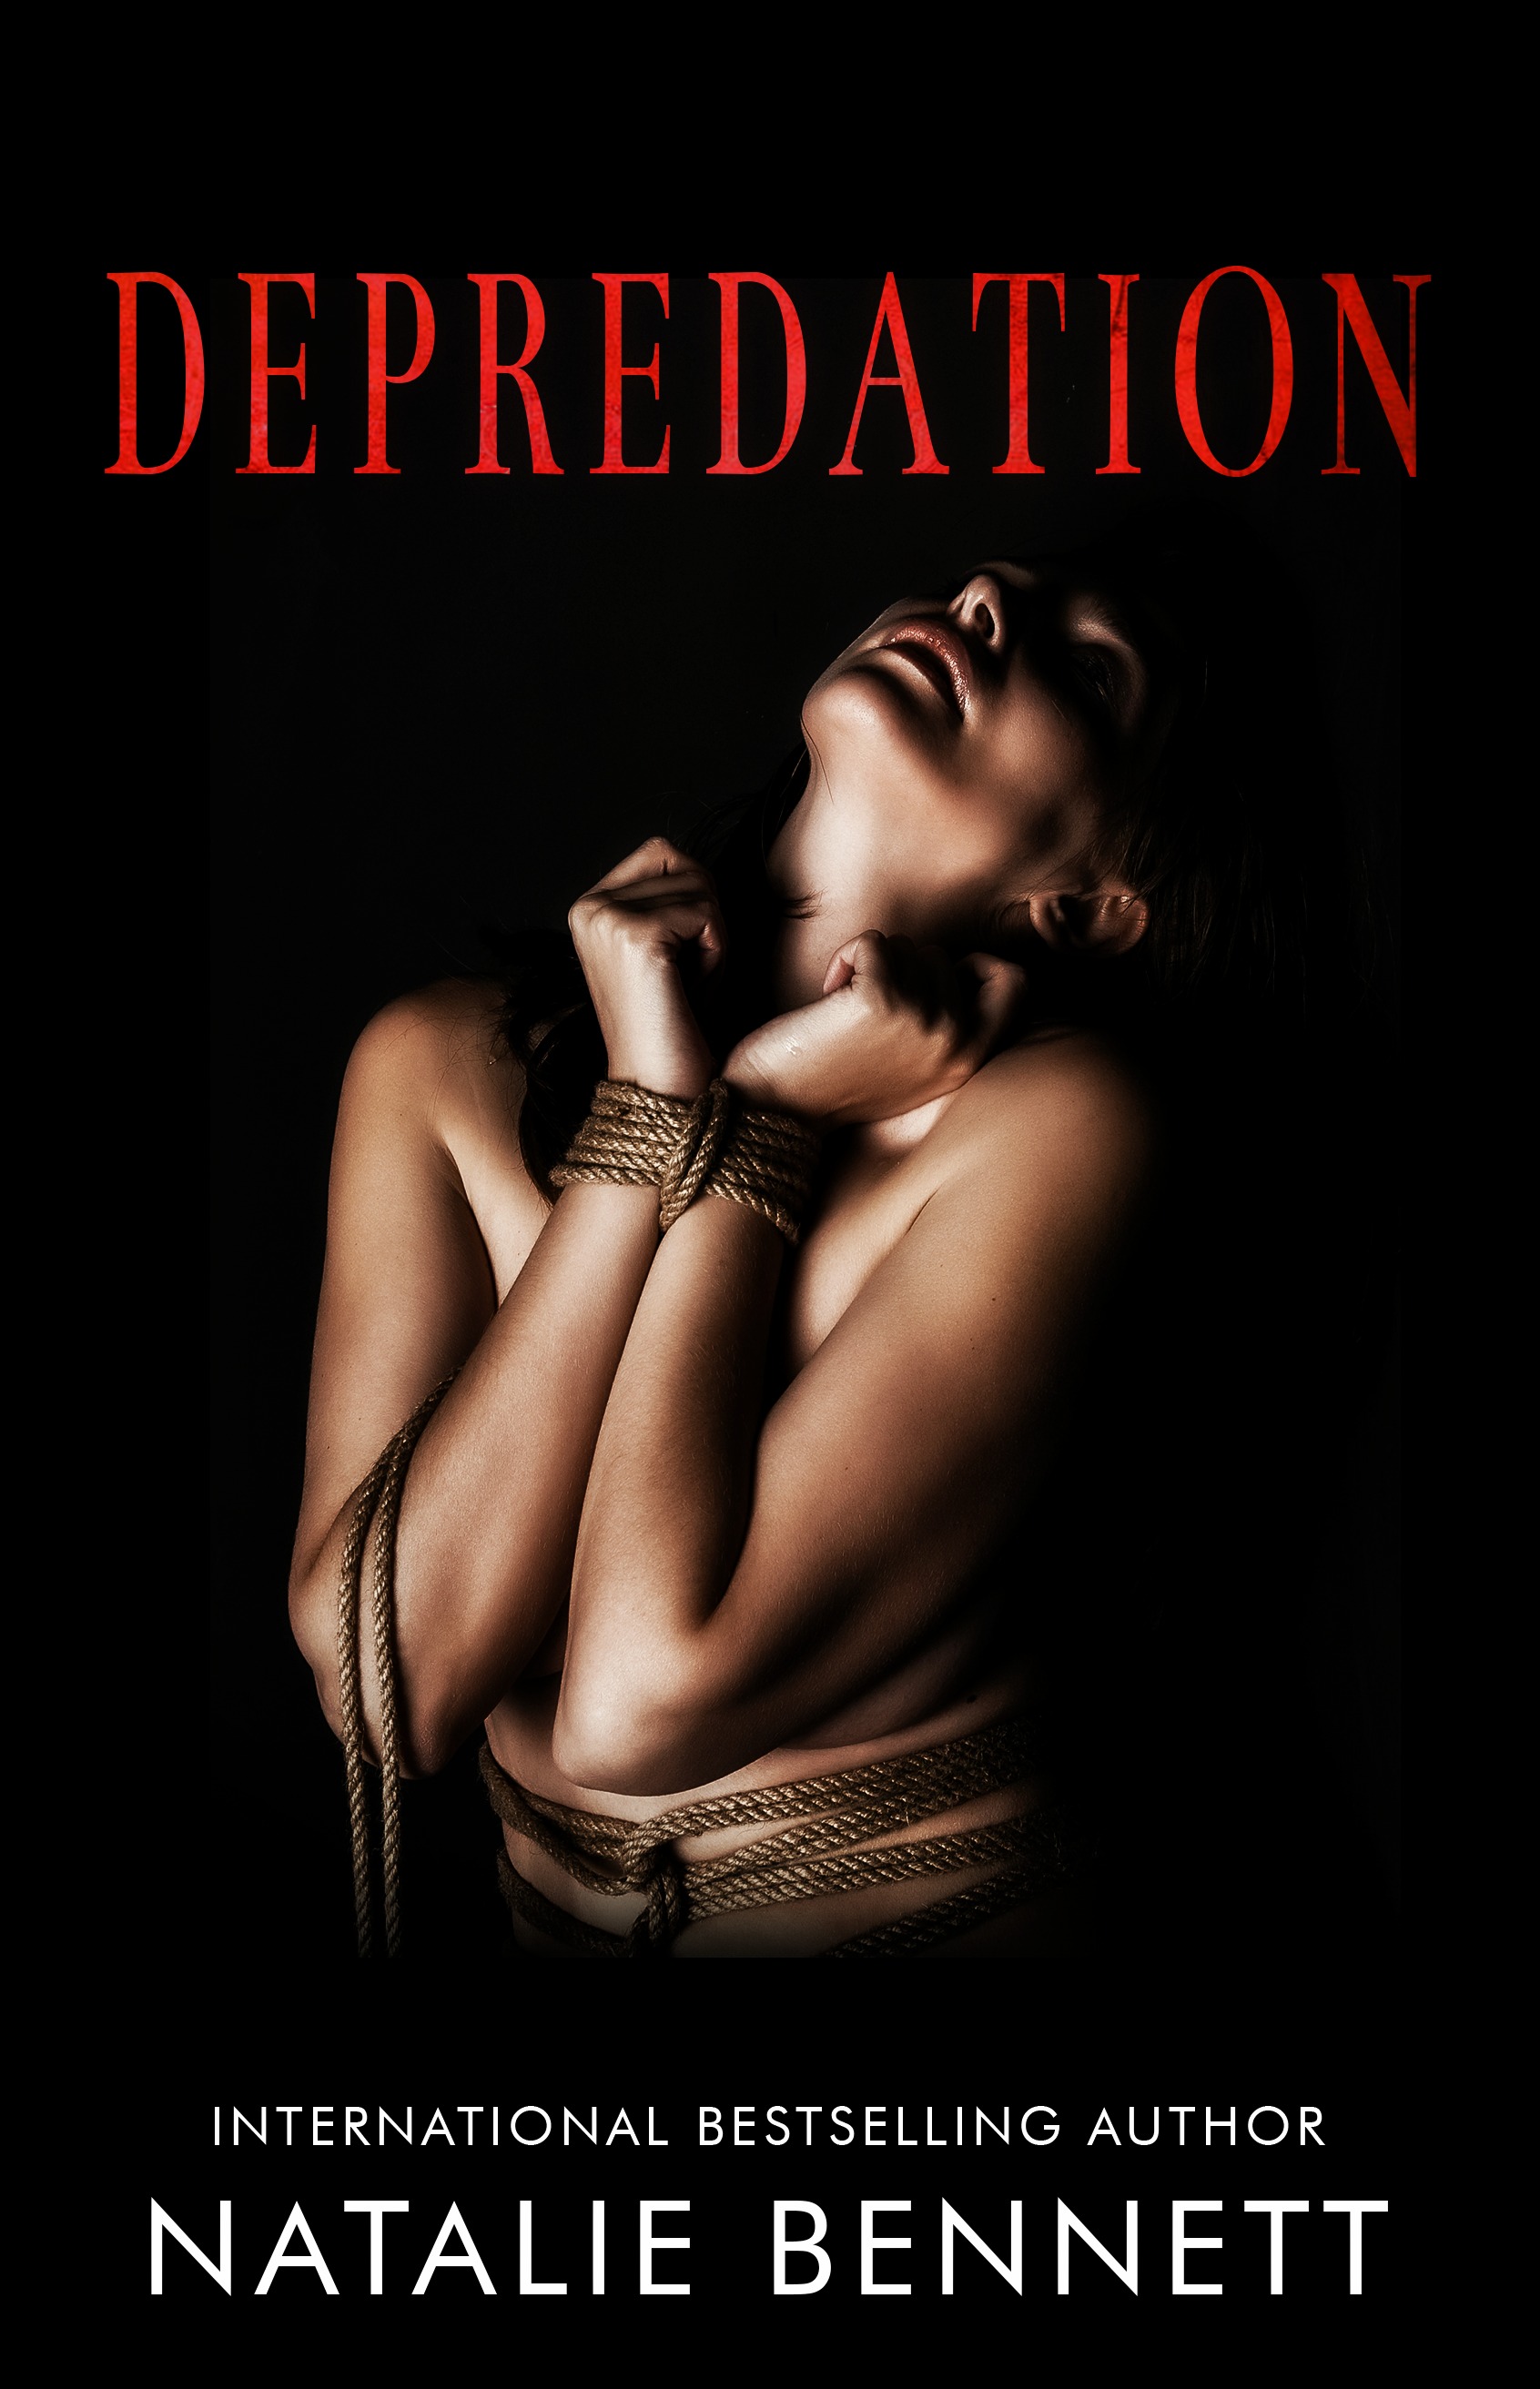 Depredation by Natalie Bennett [Release Blitz]